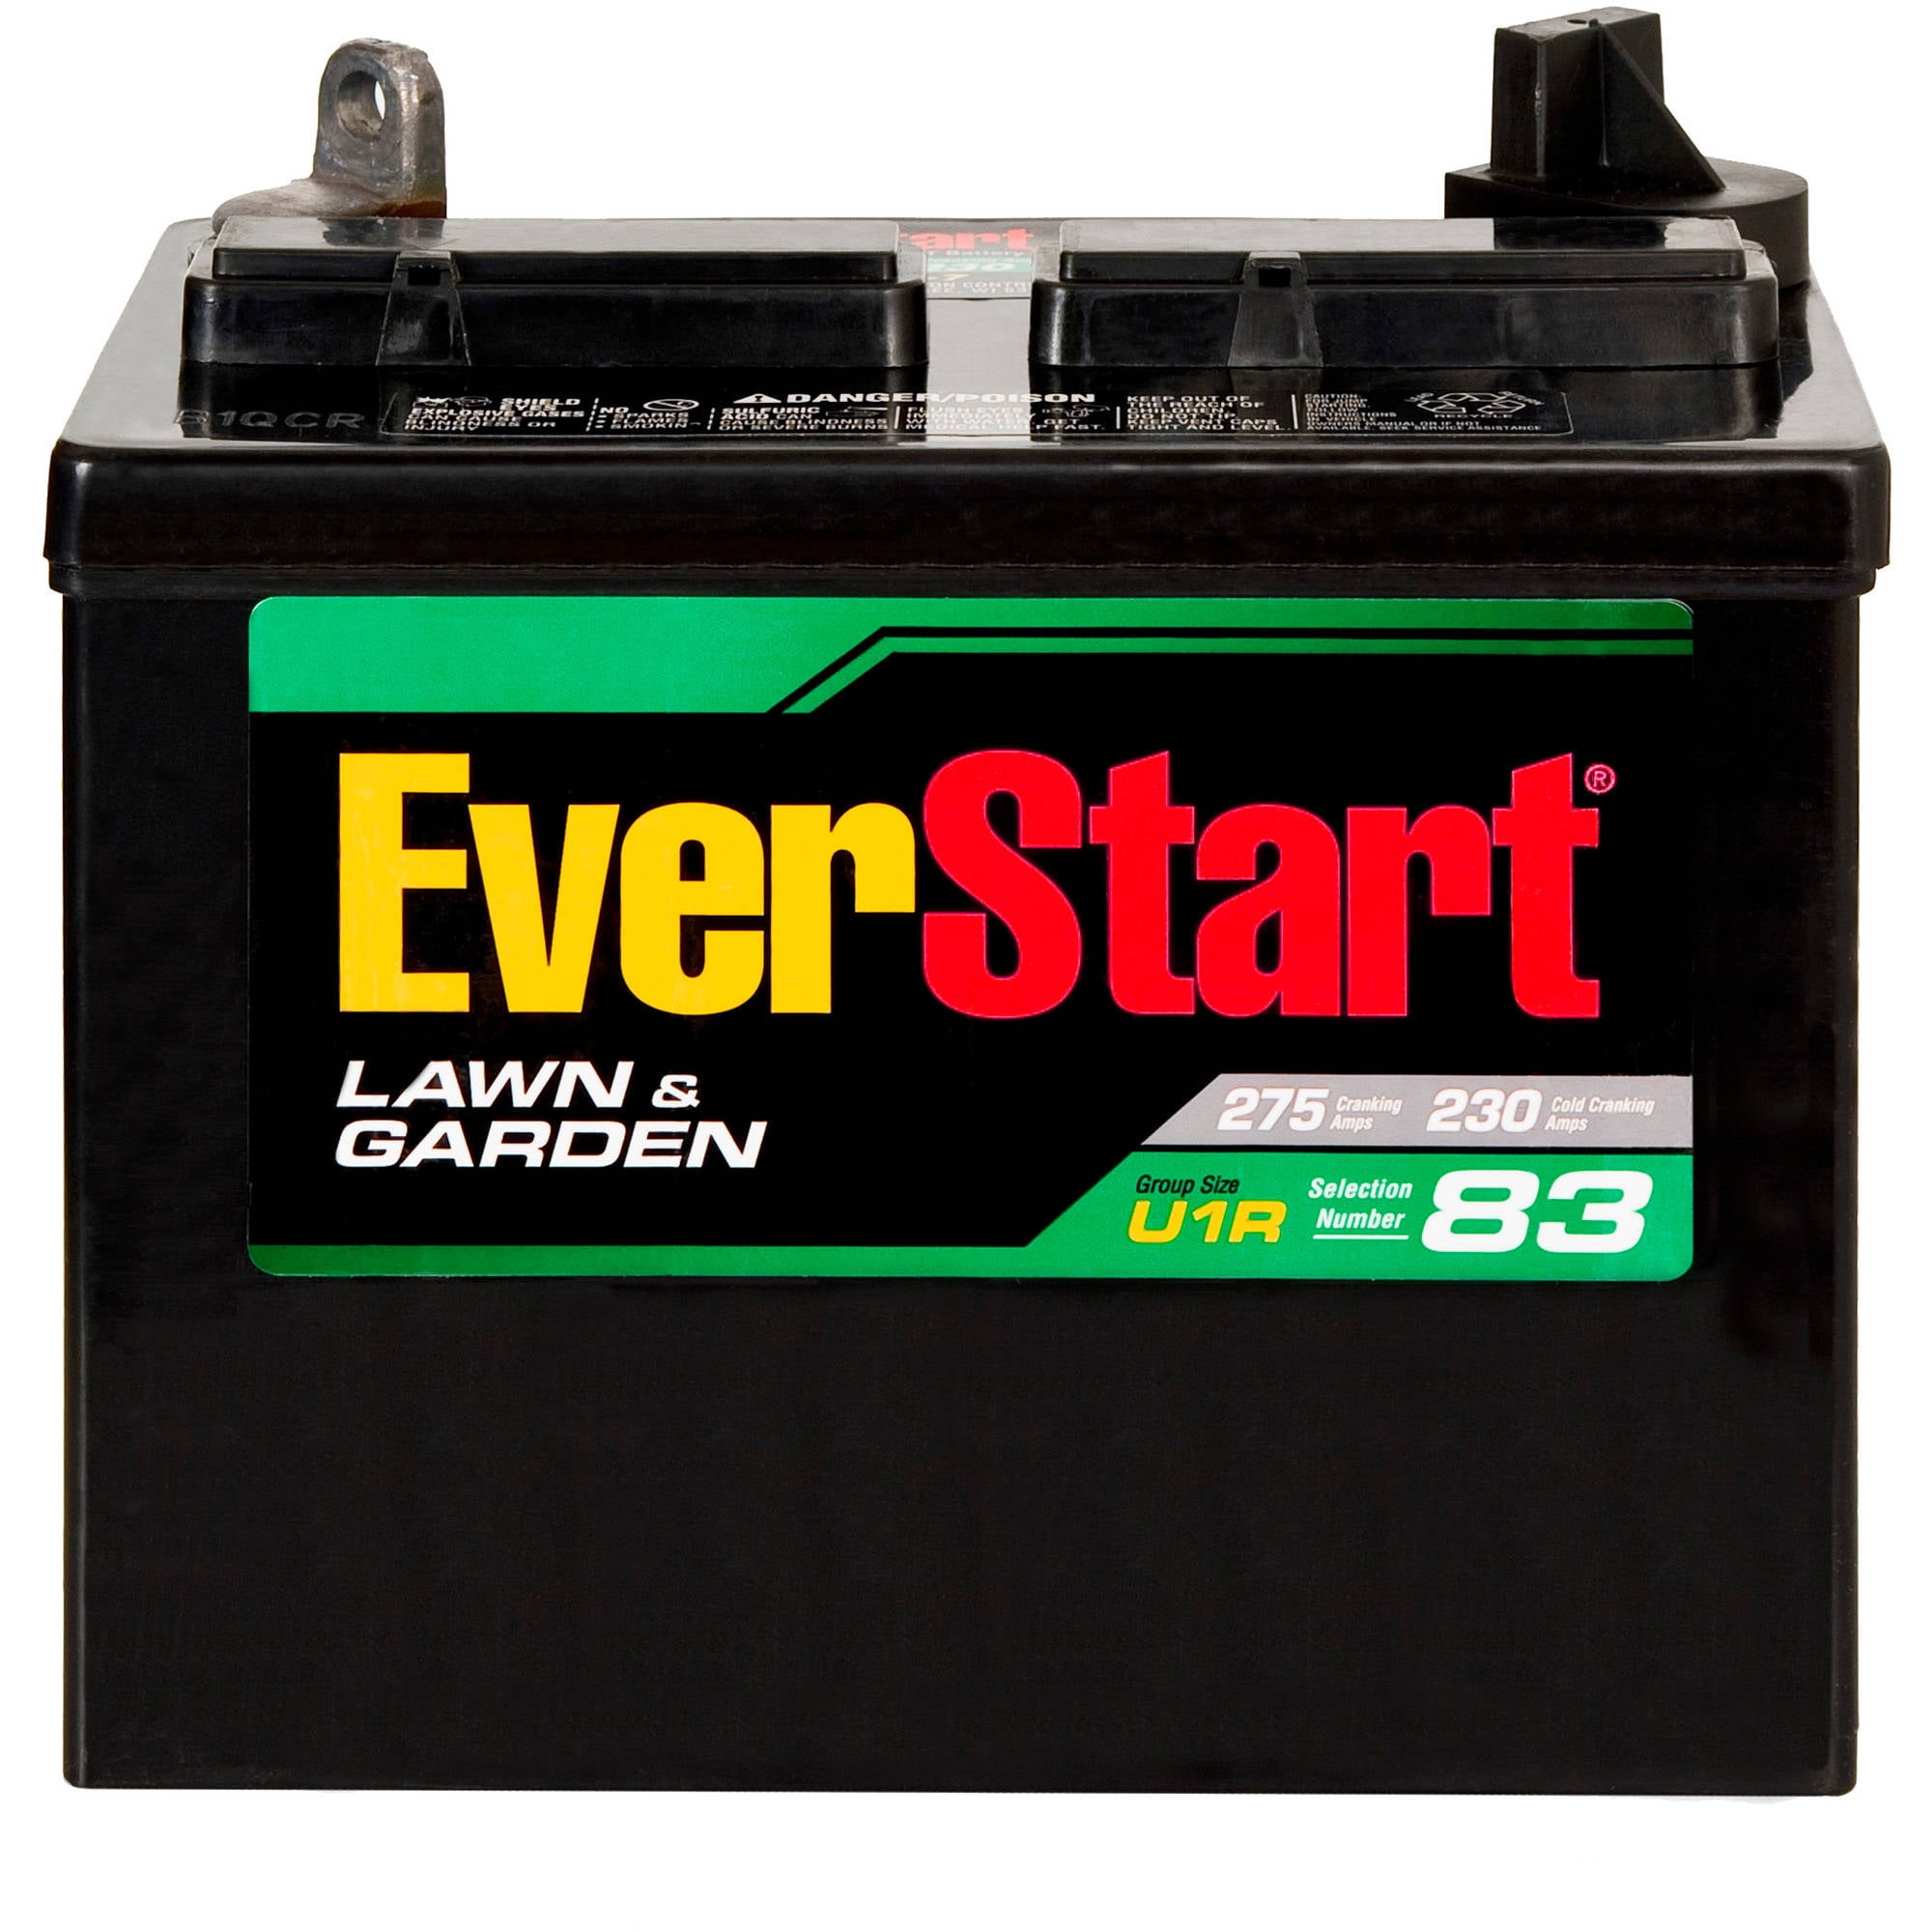 Everstart Lawn Garden Battery U1r 7 Walmart Com Walmart Com